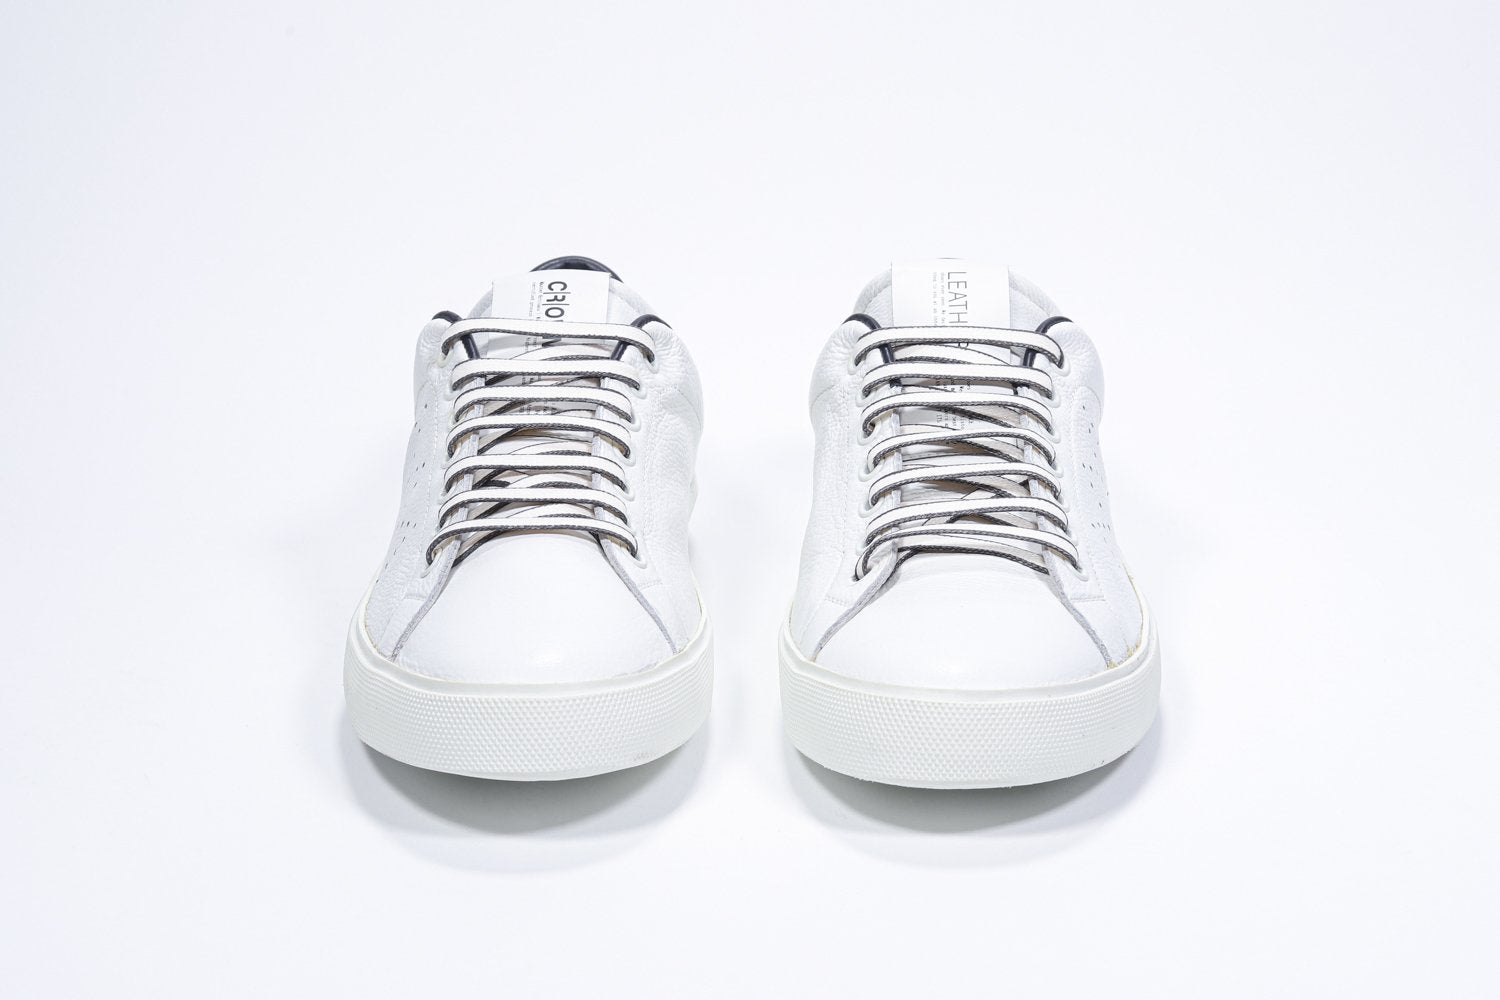 Vue de face de la chaussure blanche sneaker avec des détails bleu marine et le logo perforé de la couronne sur l'empeigne. Tige en cuir et semelle en caoutchouc blanc.